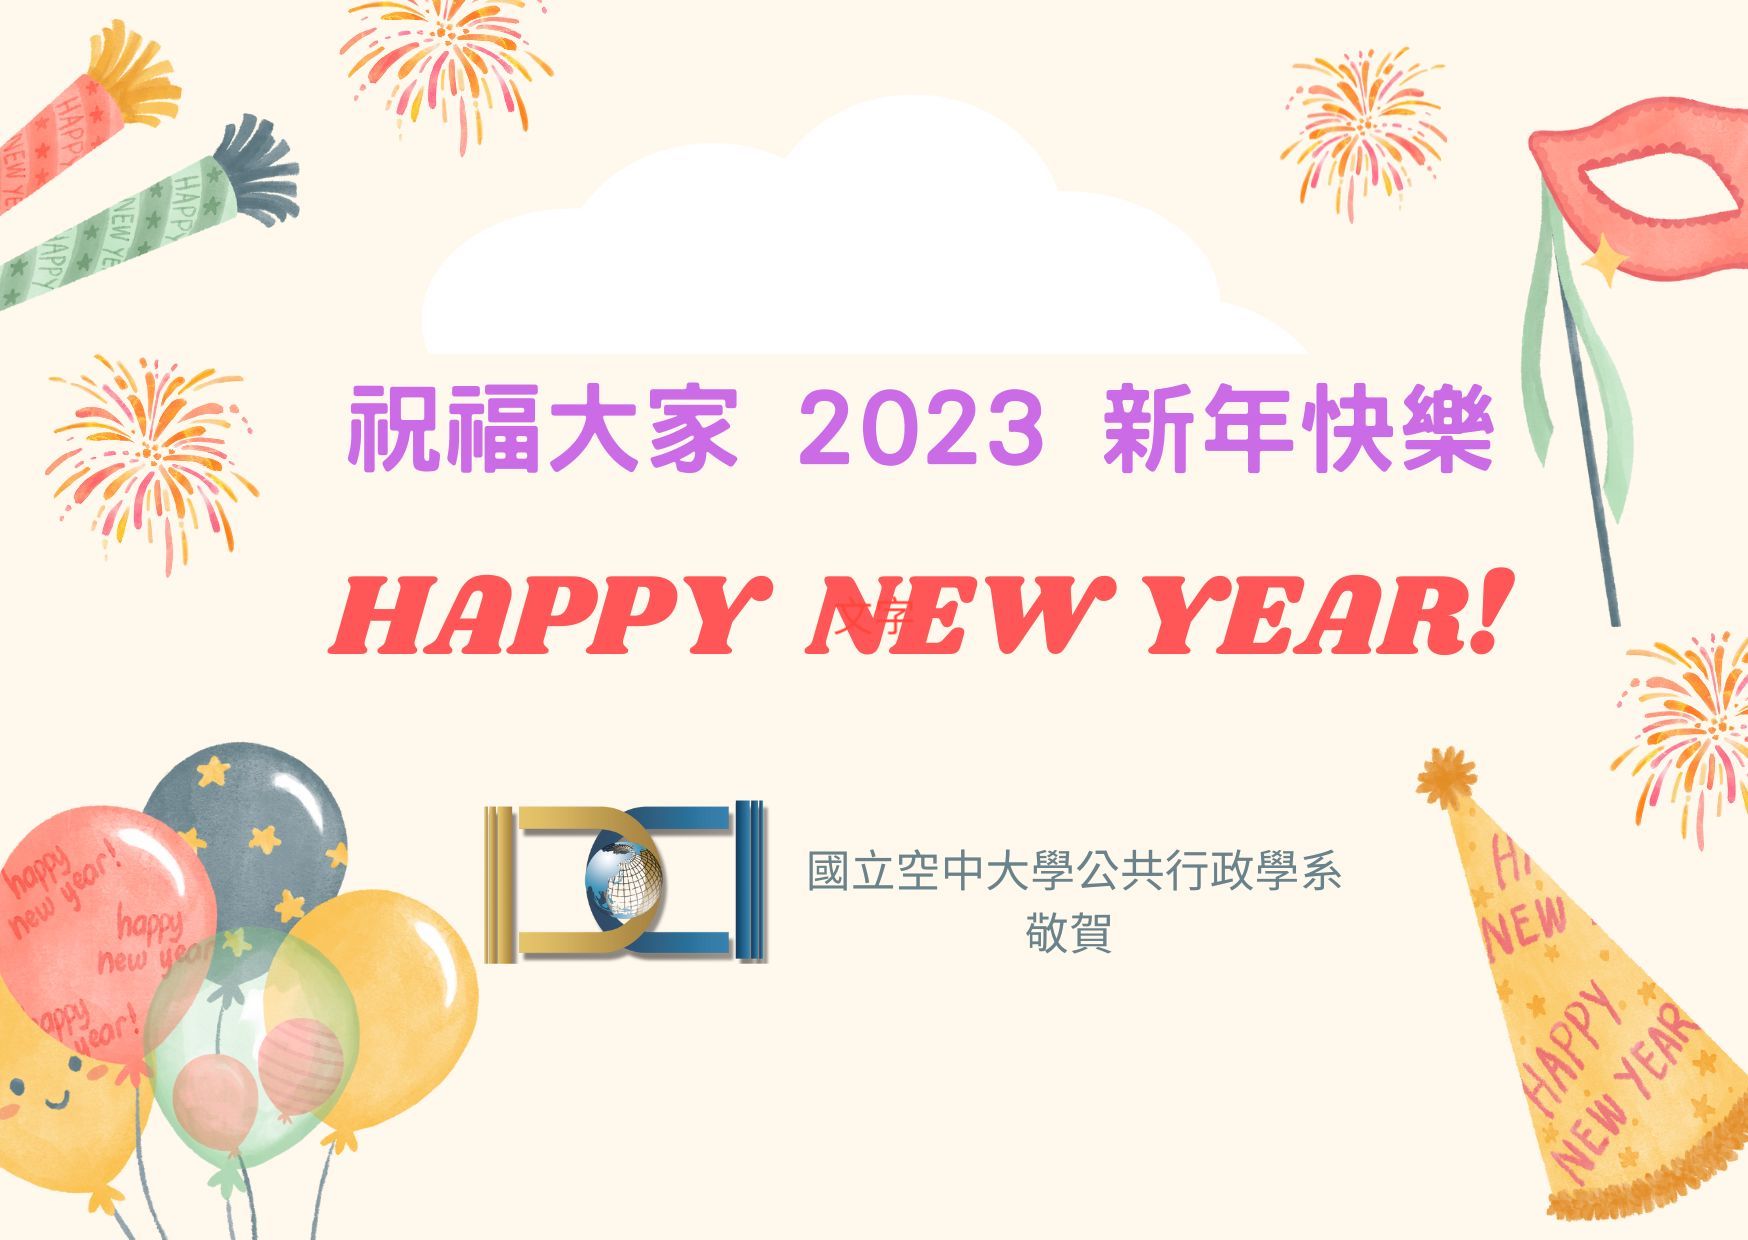 【敬祝】 空大公行系敬祝2023新年快樂！_圖片